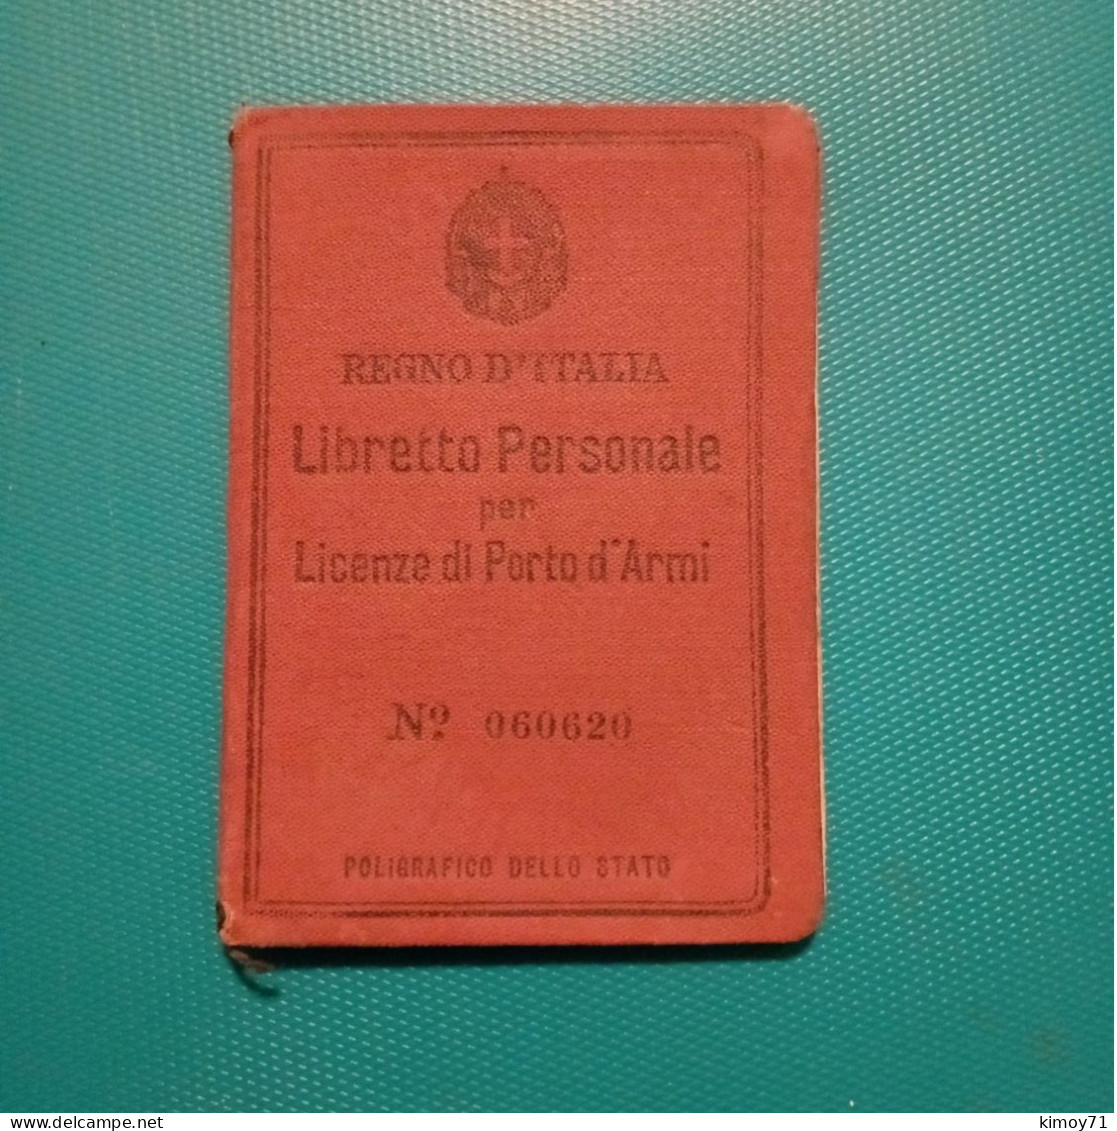 Libretto Personale Per Licenza Di Porto D'Armi - Historische Dokumente